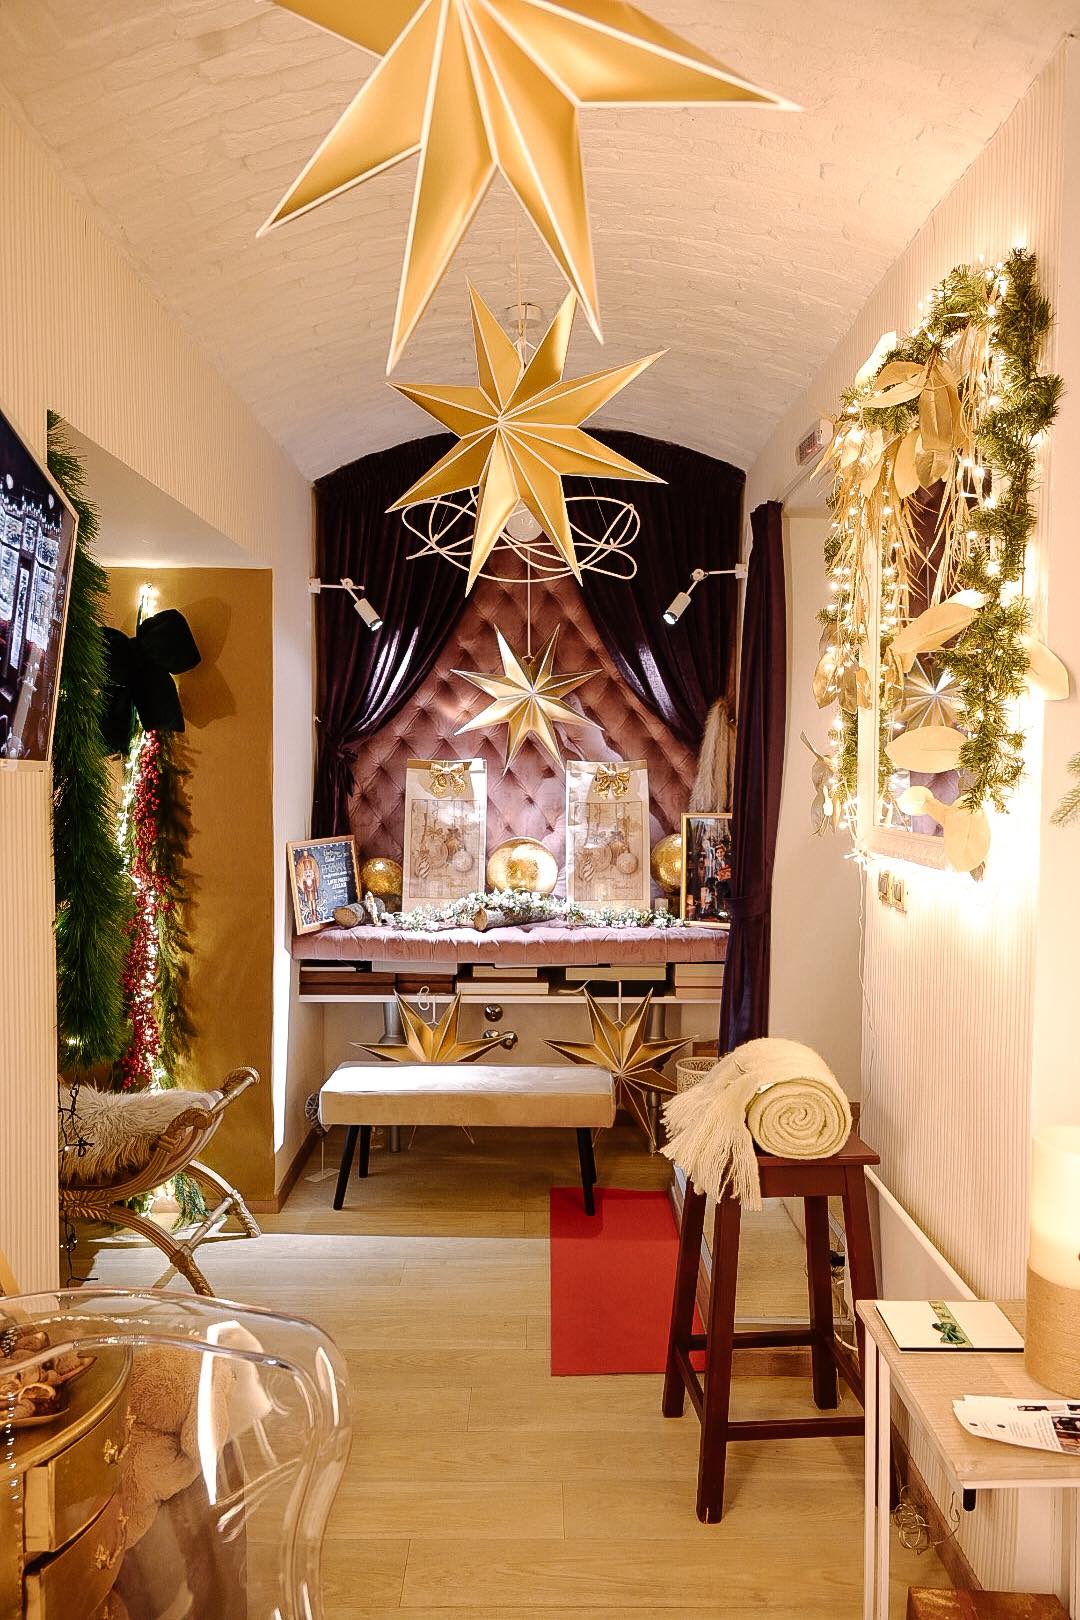 Najljepši opatijski izlog u božićnom ruhu ima LaVie Photo Atelier. Čestitamo!